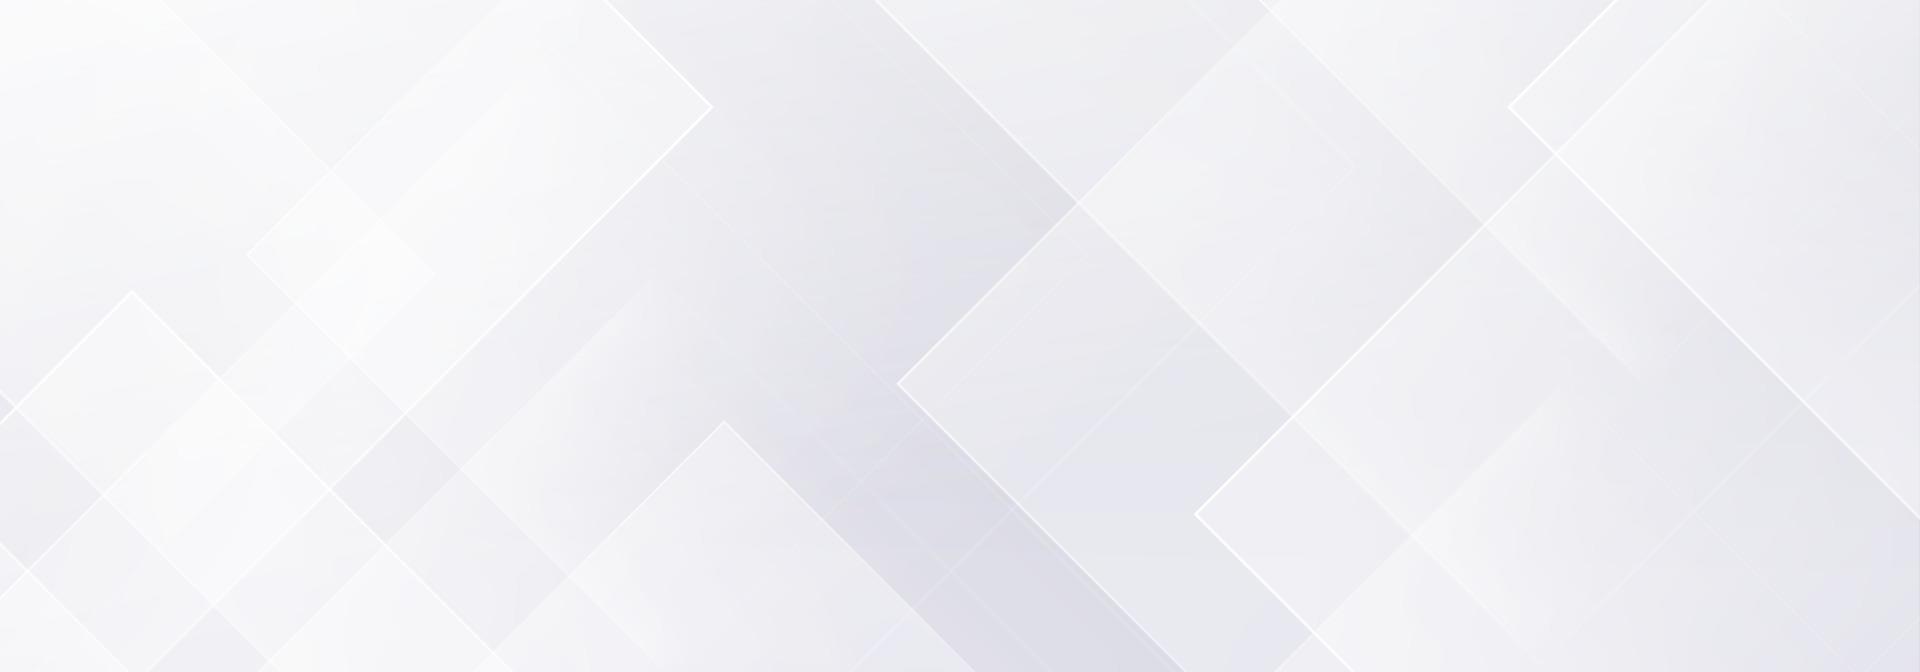 abstract geometrisch wit en grijs op lichte zilveren gradiëntachtergrond. modern bannerontwerp. vector illustratie